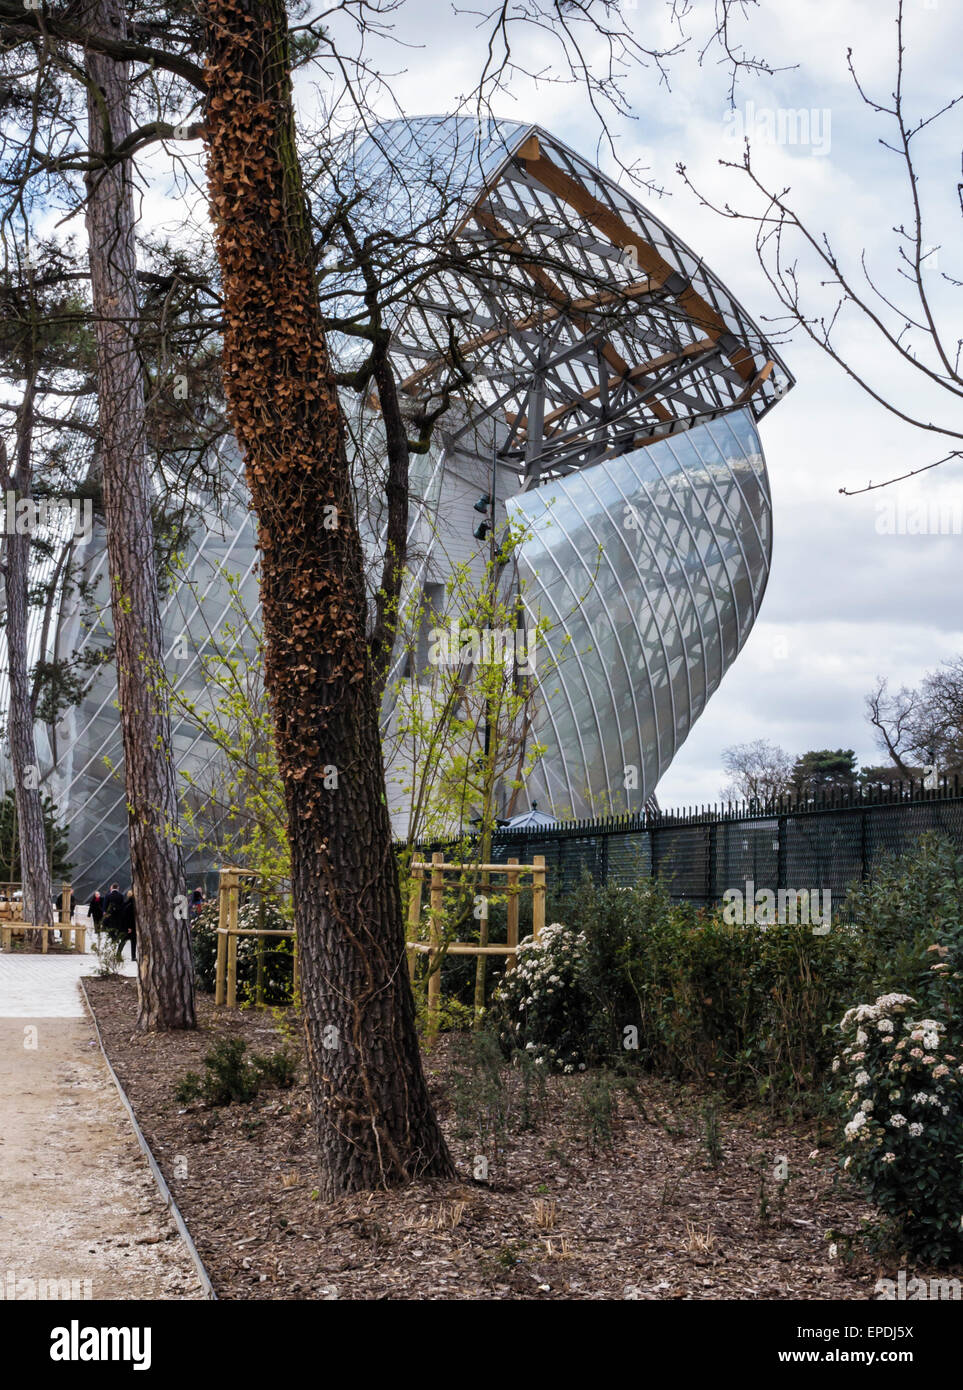 Fondazione Louis Vuitton galleria d'arte contemporanea a Parigi. Moderno in acciaio e vetro architettura di architetto Frank Gehry Foto Stock